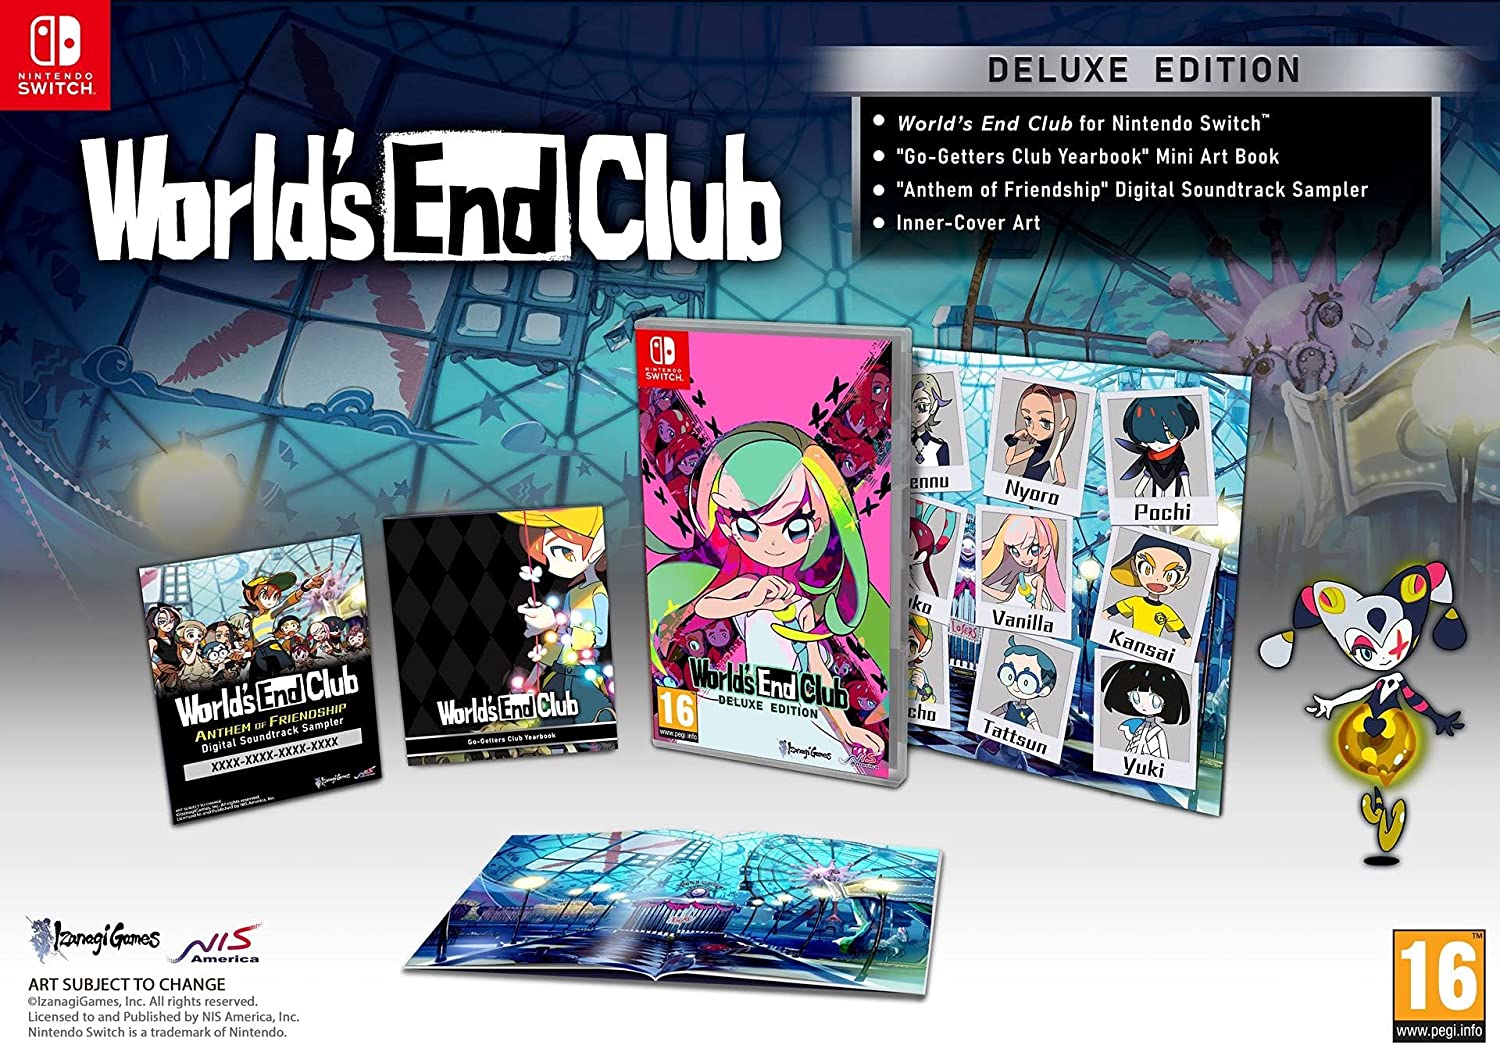 World’s-End-Club-Deluxe-Edition-NSW-bazaar-bazaar-com-1